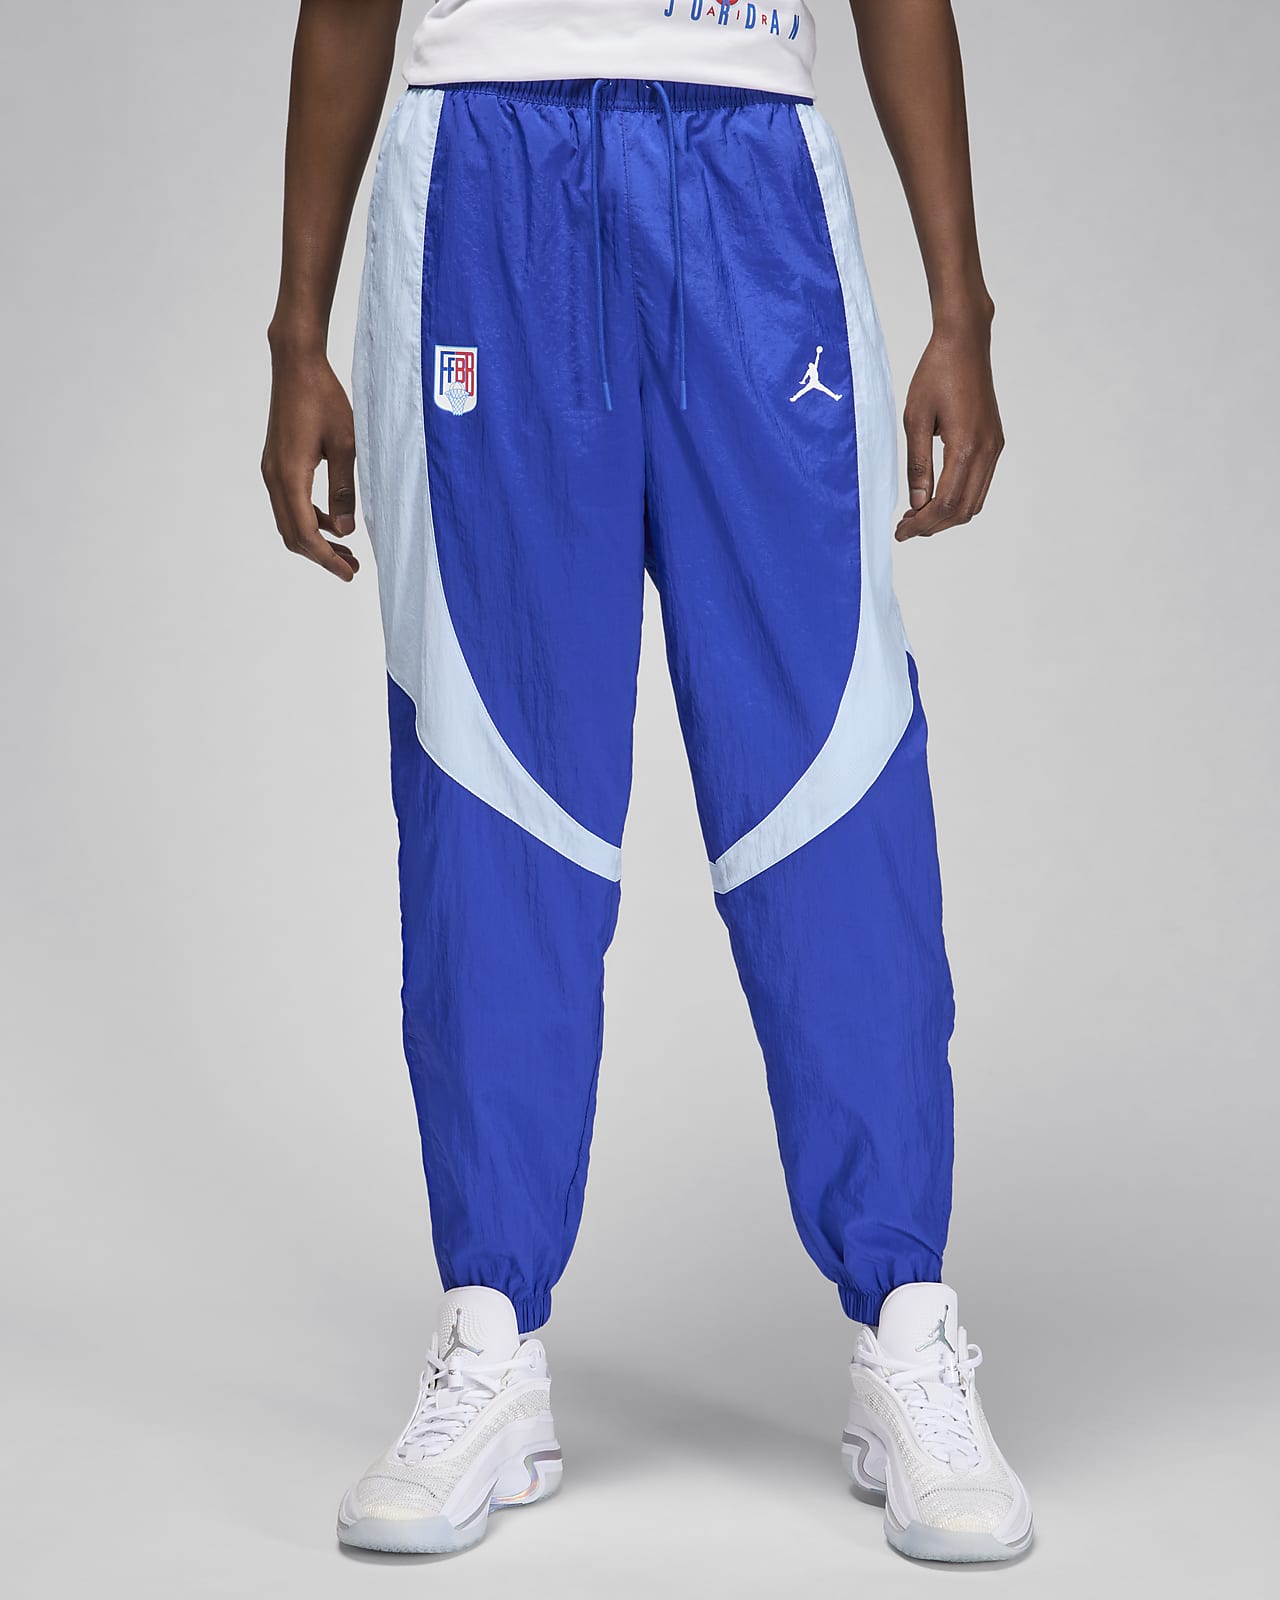 Jordan Sport JAM x Fédération Française de Basketball Pantalón de calentamiento - Hombre